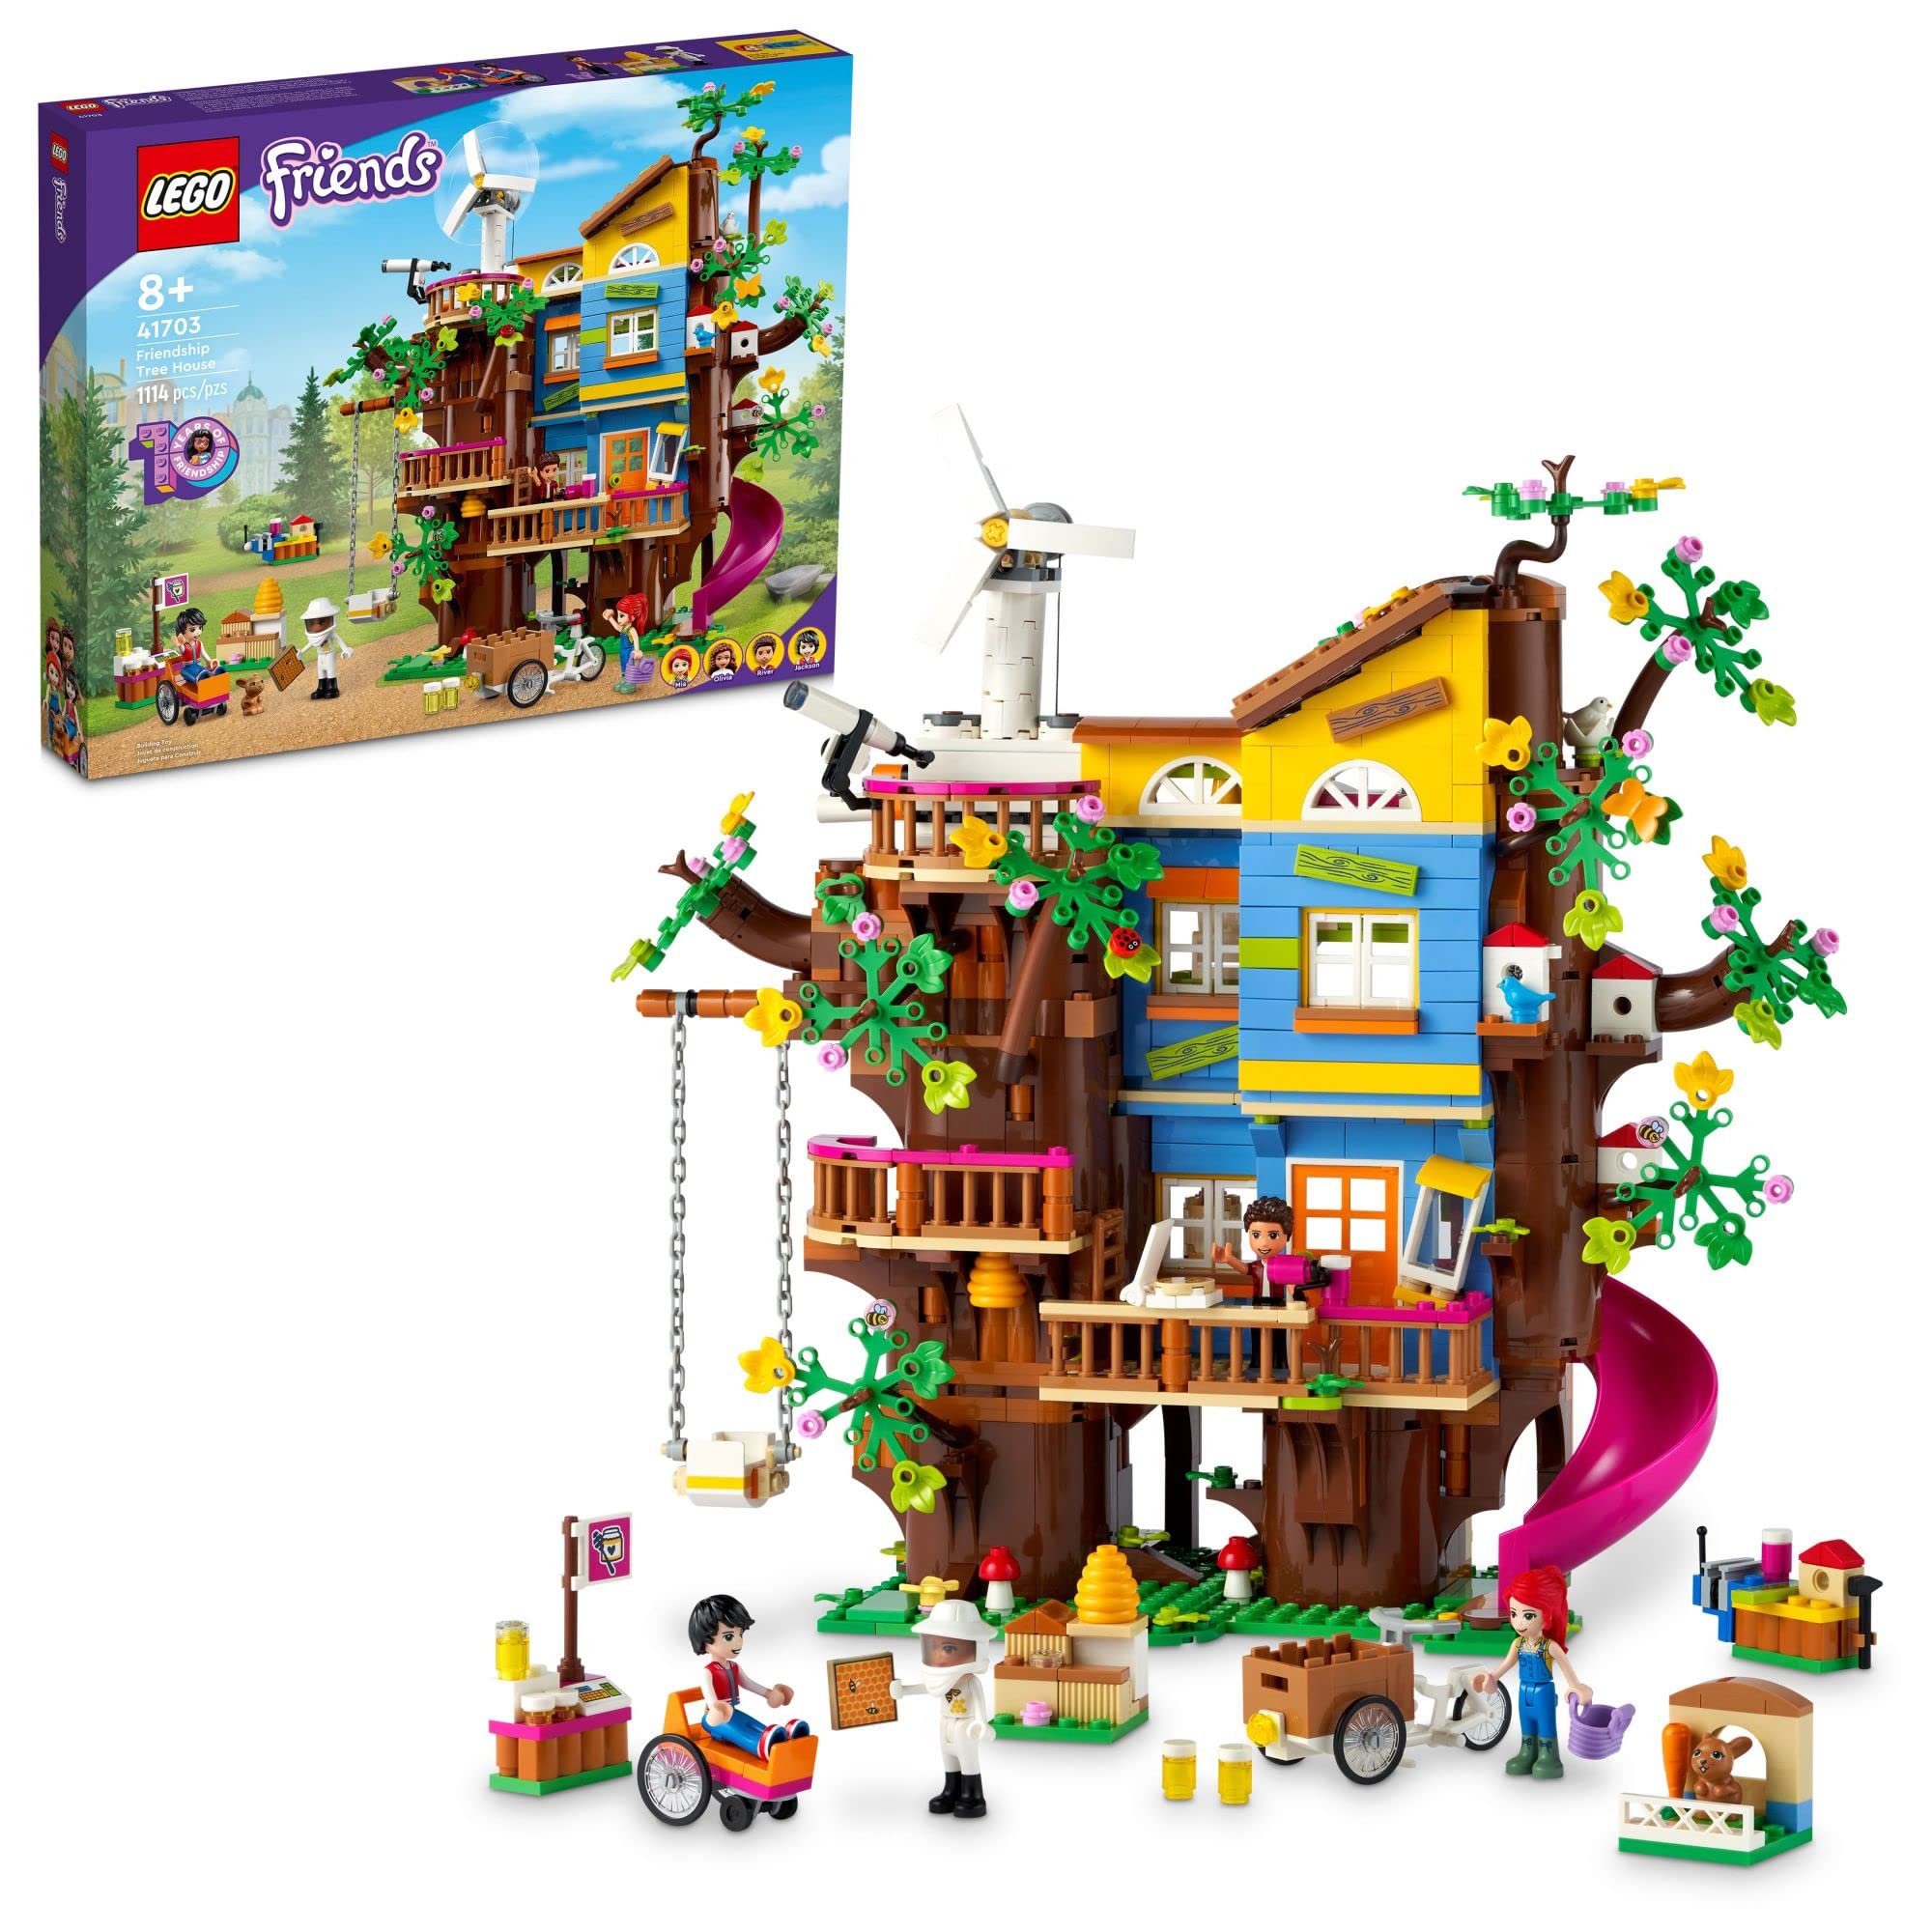  LEGO طقم بناء فريندز فريندز تري هاوس 41703 ؛ فكرة هدية عيد ميلاد ممتعة للأطفال الذين تزيد أعمارهم عن 8 سنوات والذين...